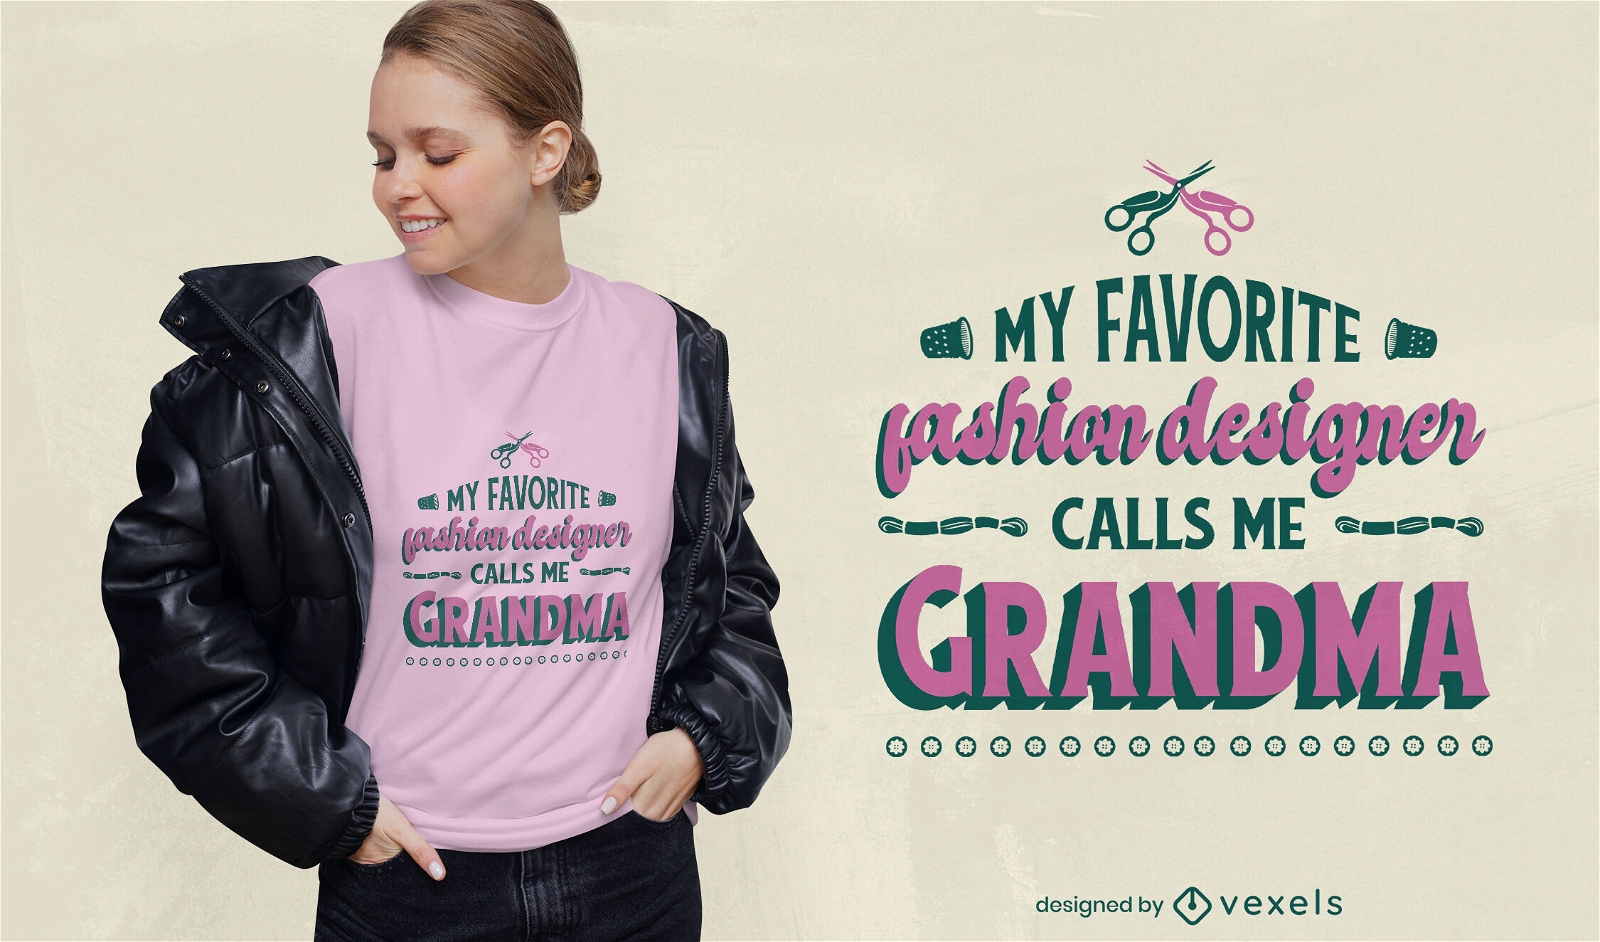 Dise?o de camiseta de abuela dise?adora de moda.